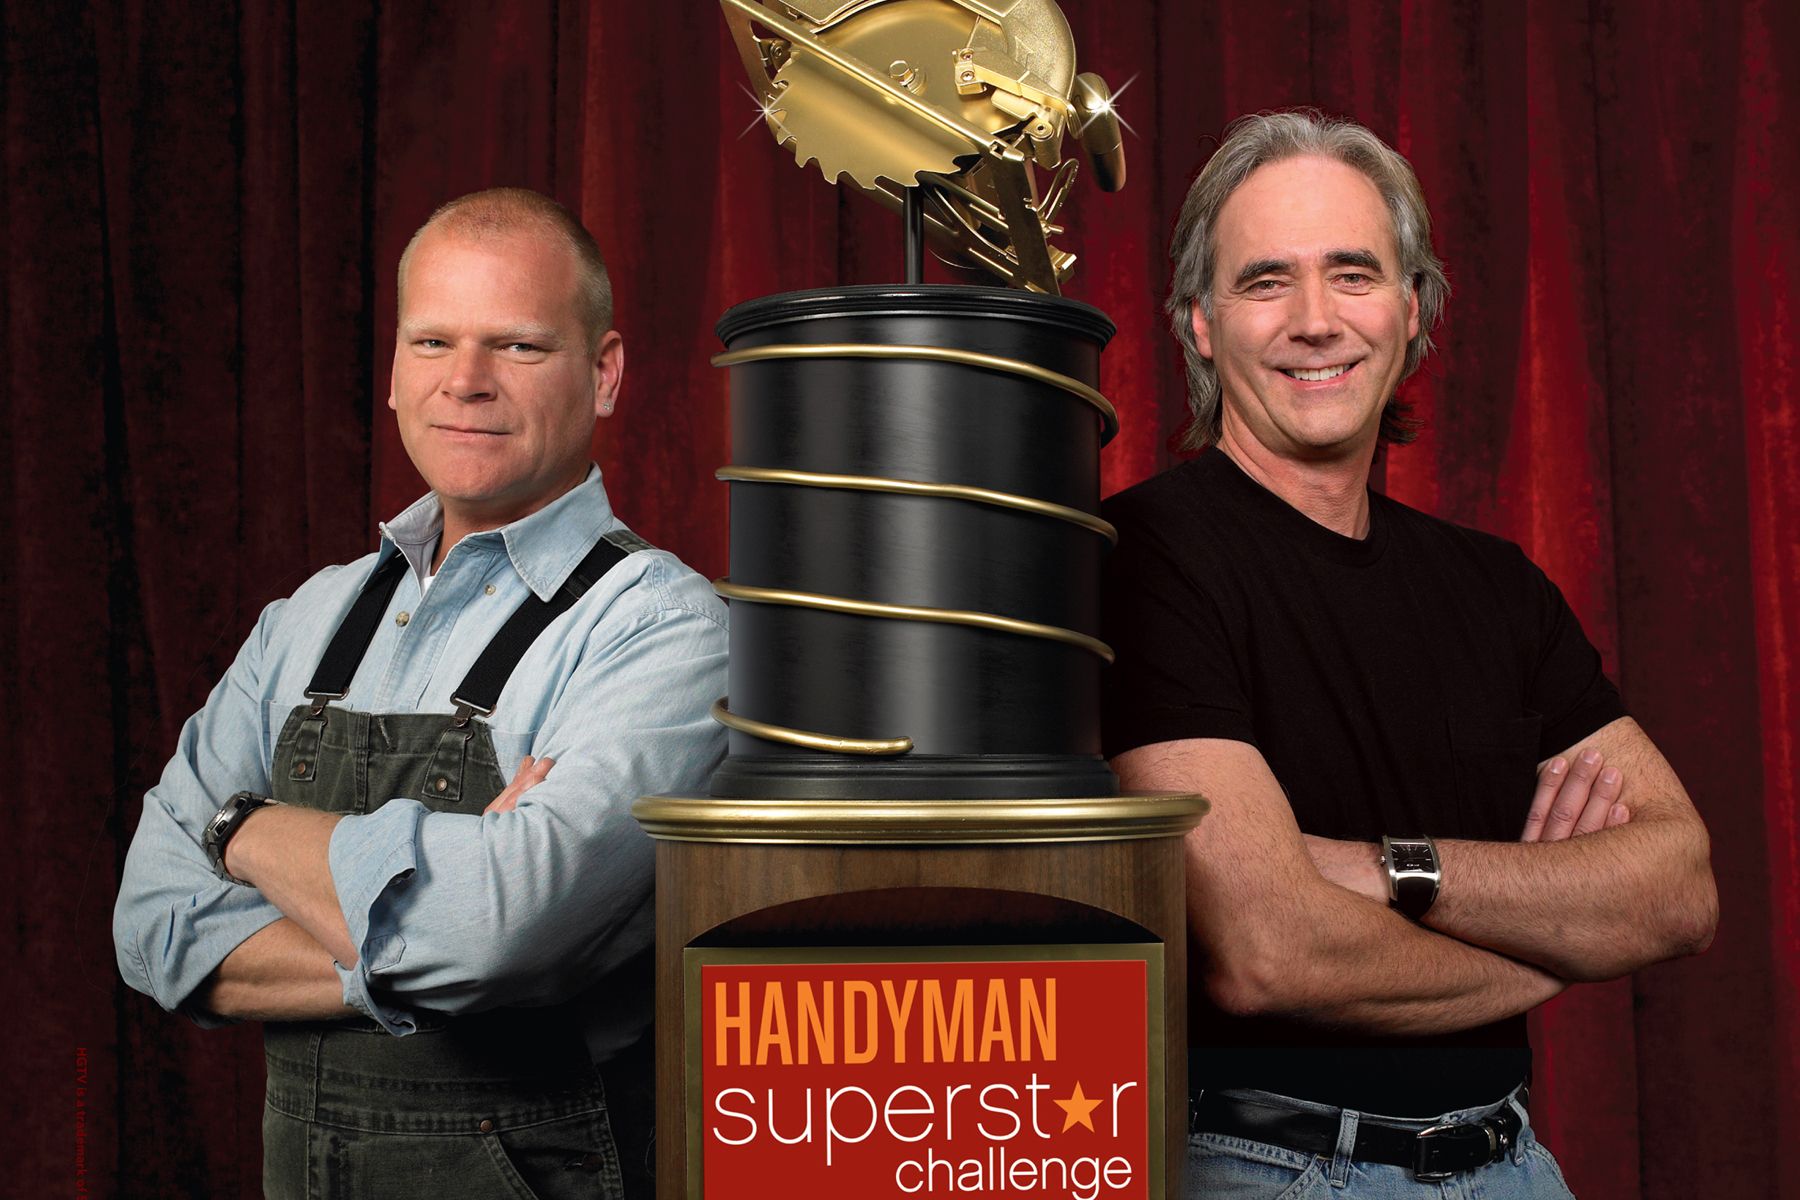 Handyman Superstar challenge